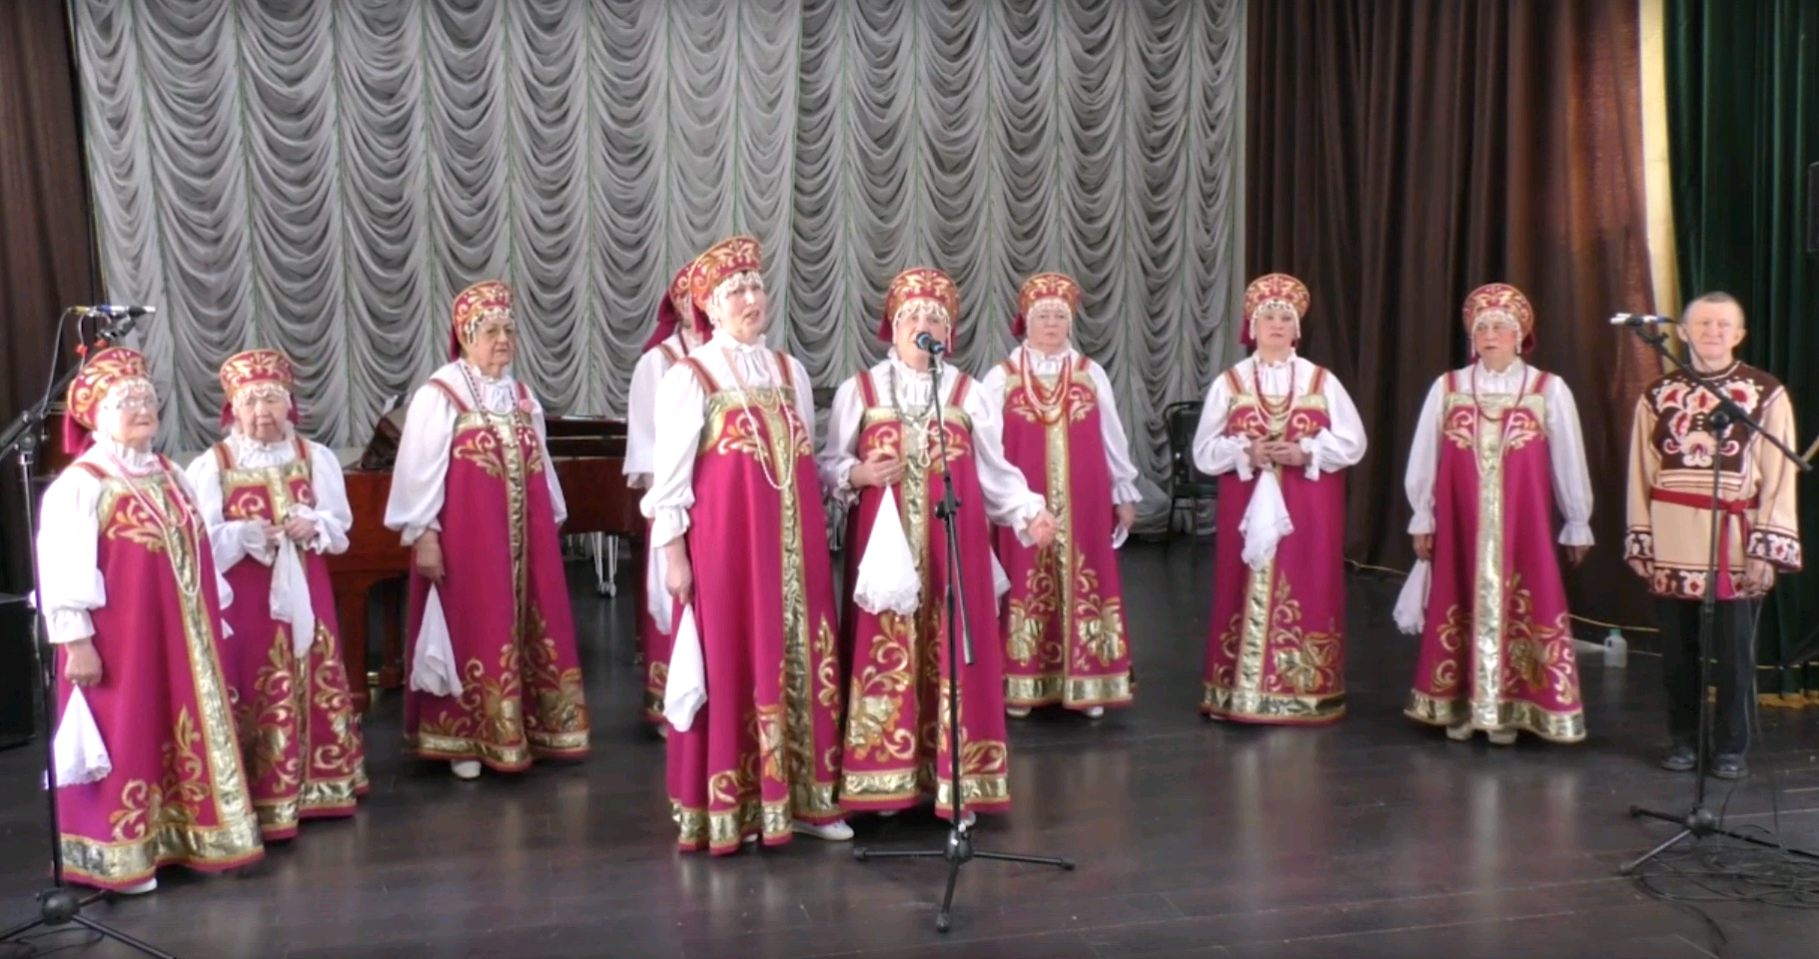 Тематическое видеопоздравление опубликовали сотрудники Дворца культуры Щербинки